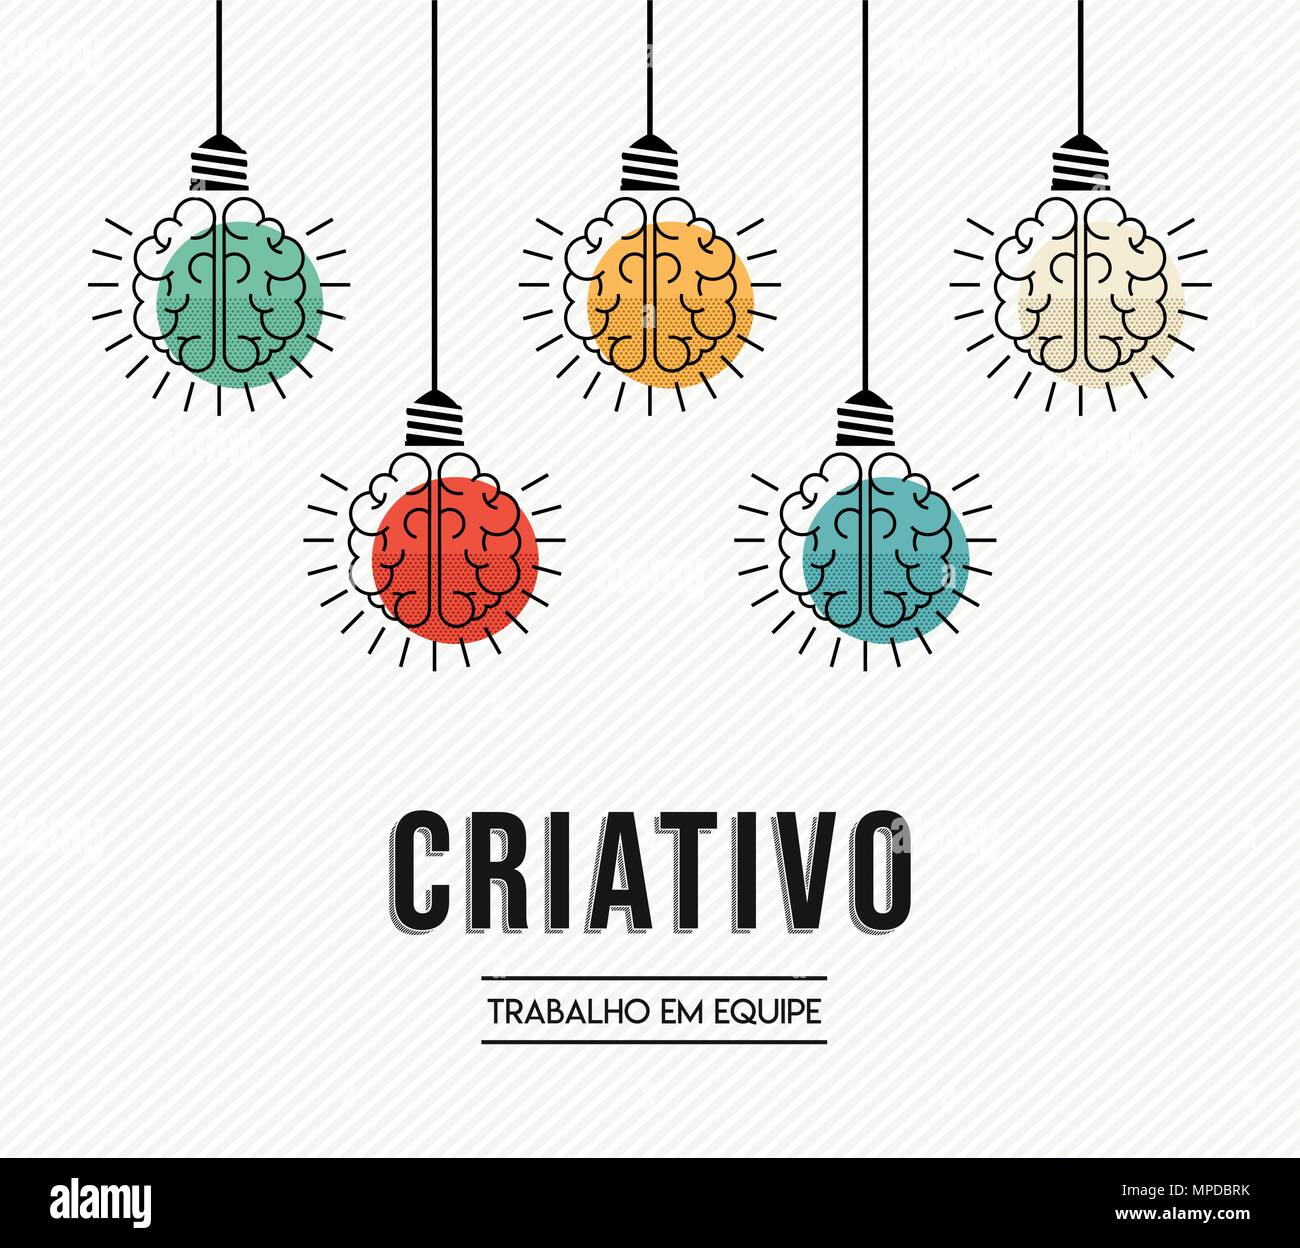 Équipe créative de conception moderne en langue portugaise avec le cerveau humain comme lampe lumière colorée, la créativité d'entreprise concept. Vecteur EPS10. Illustration de Vecteur